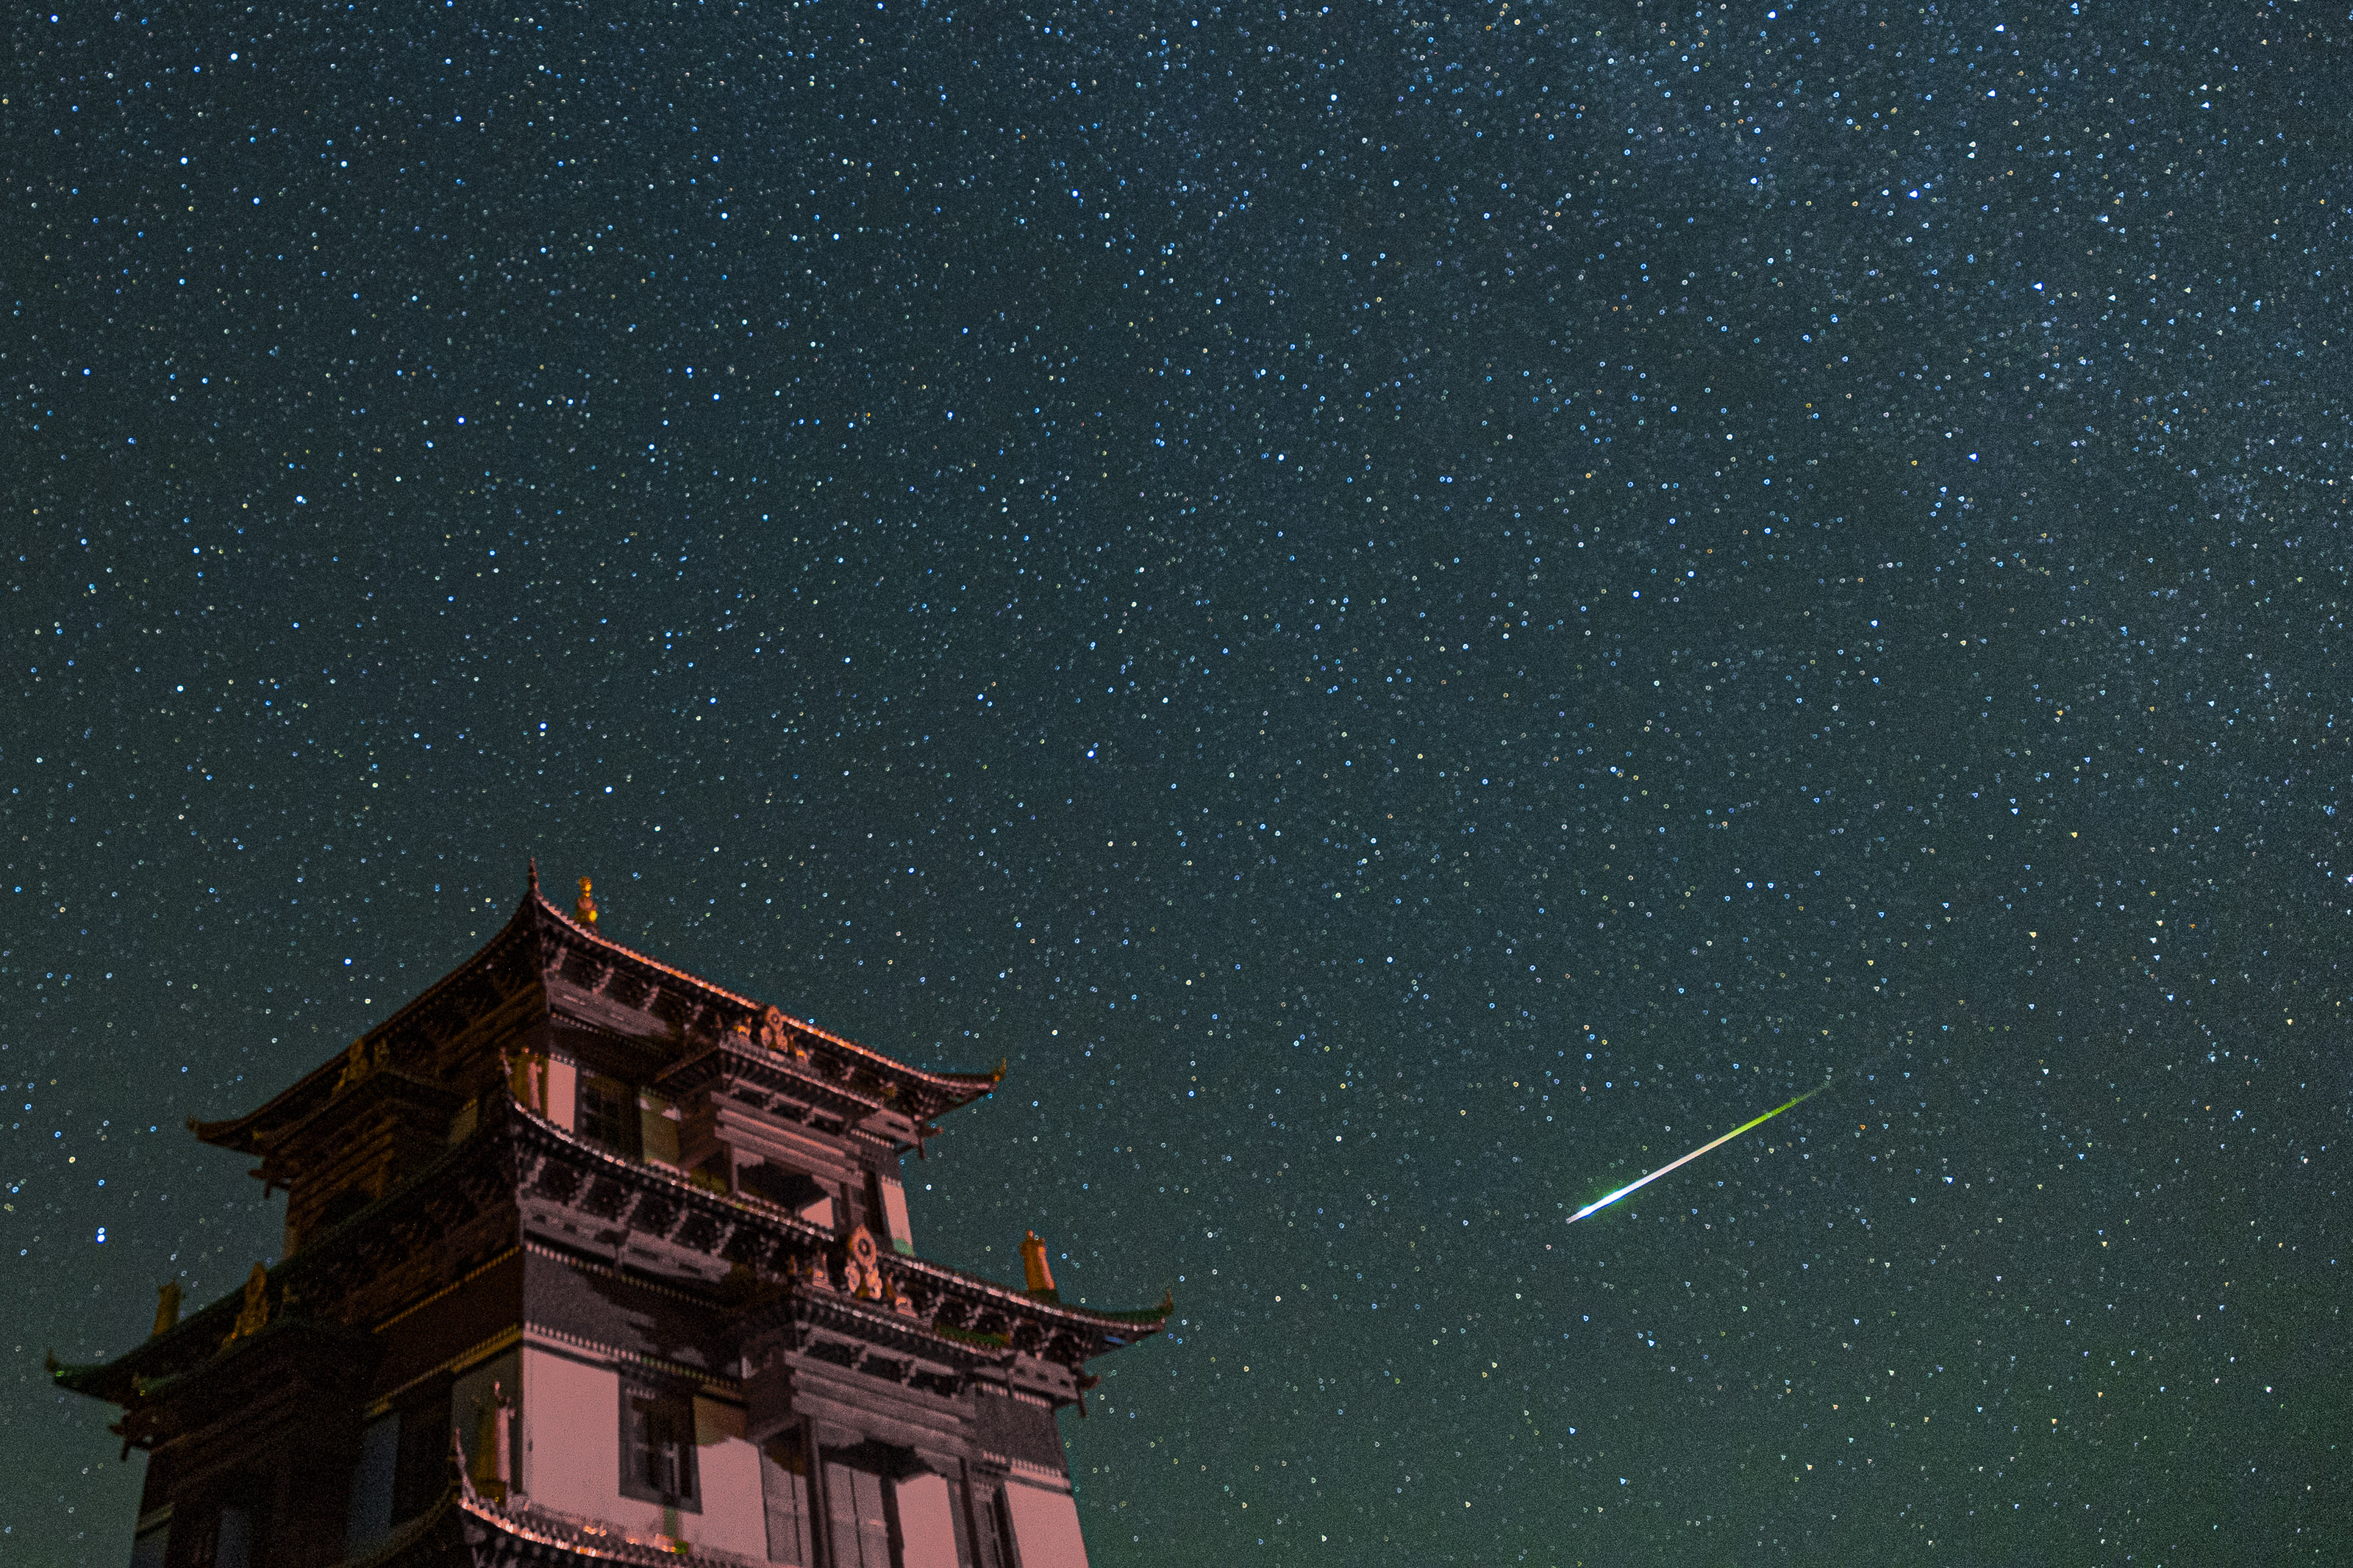 左側には大きな建物があり、満天の星空には明るい緑白色のペルセウス座流星が見えます。